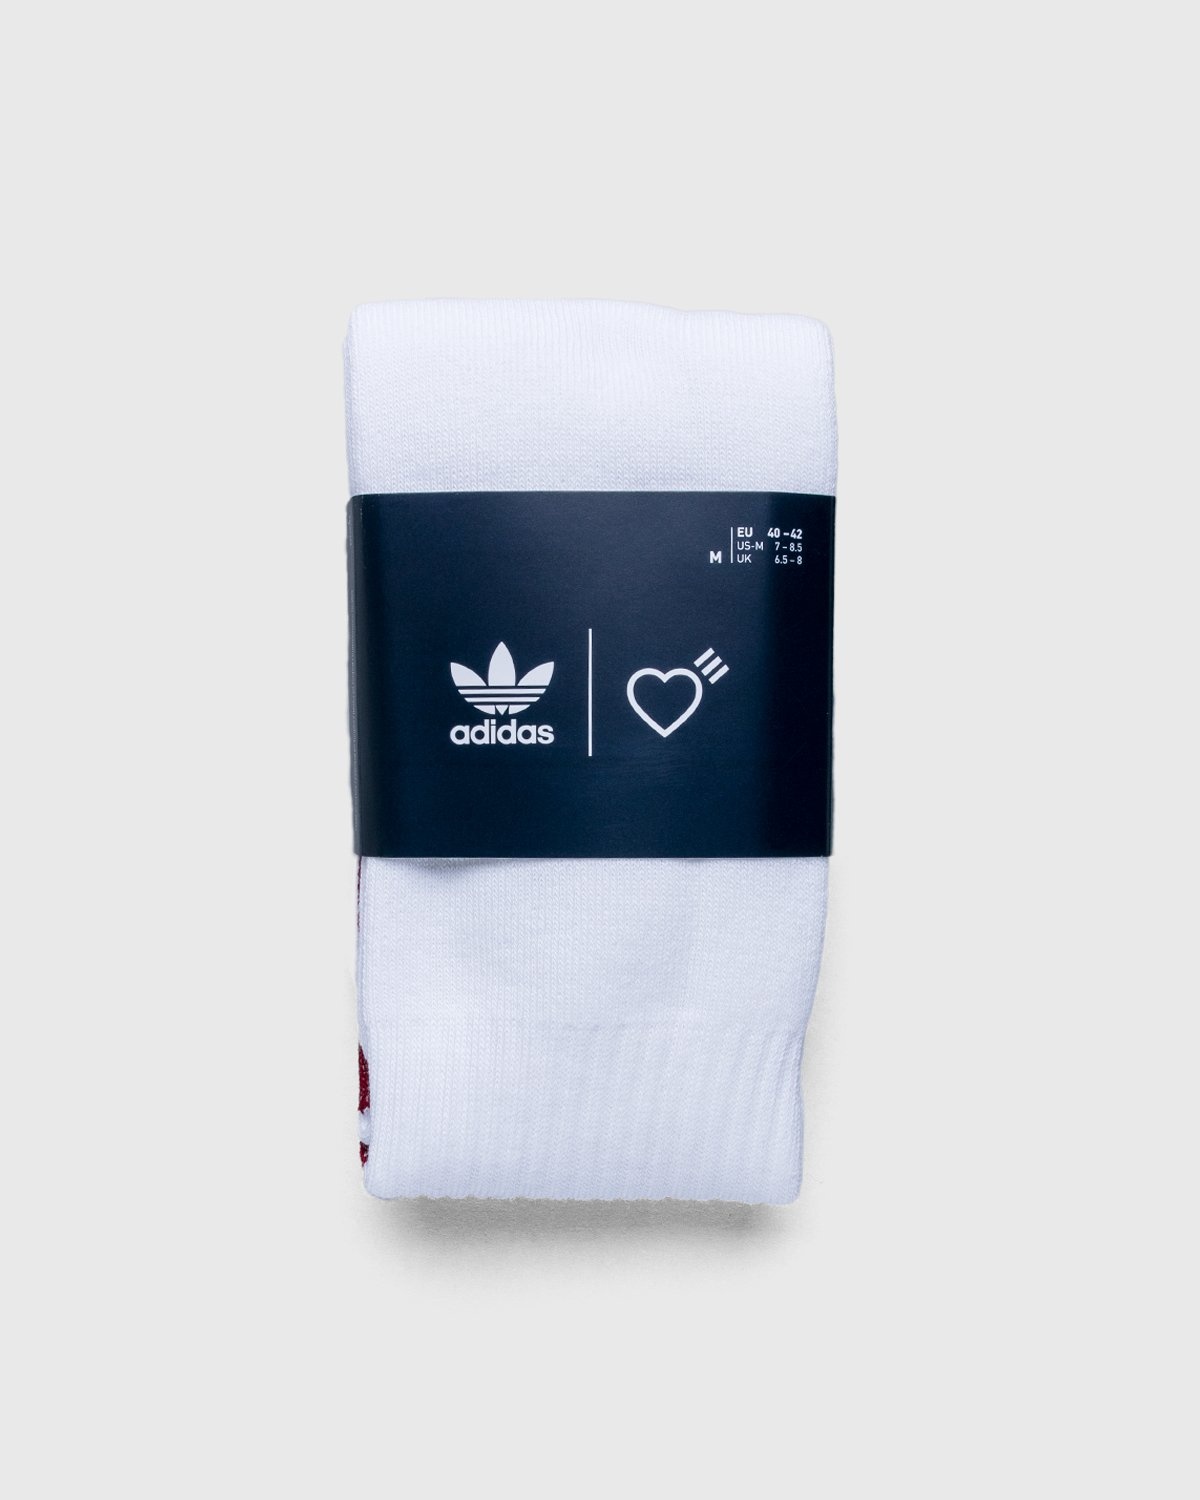 adidas Originals x Human Made – Socks White - Crew - White - Image 2